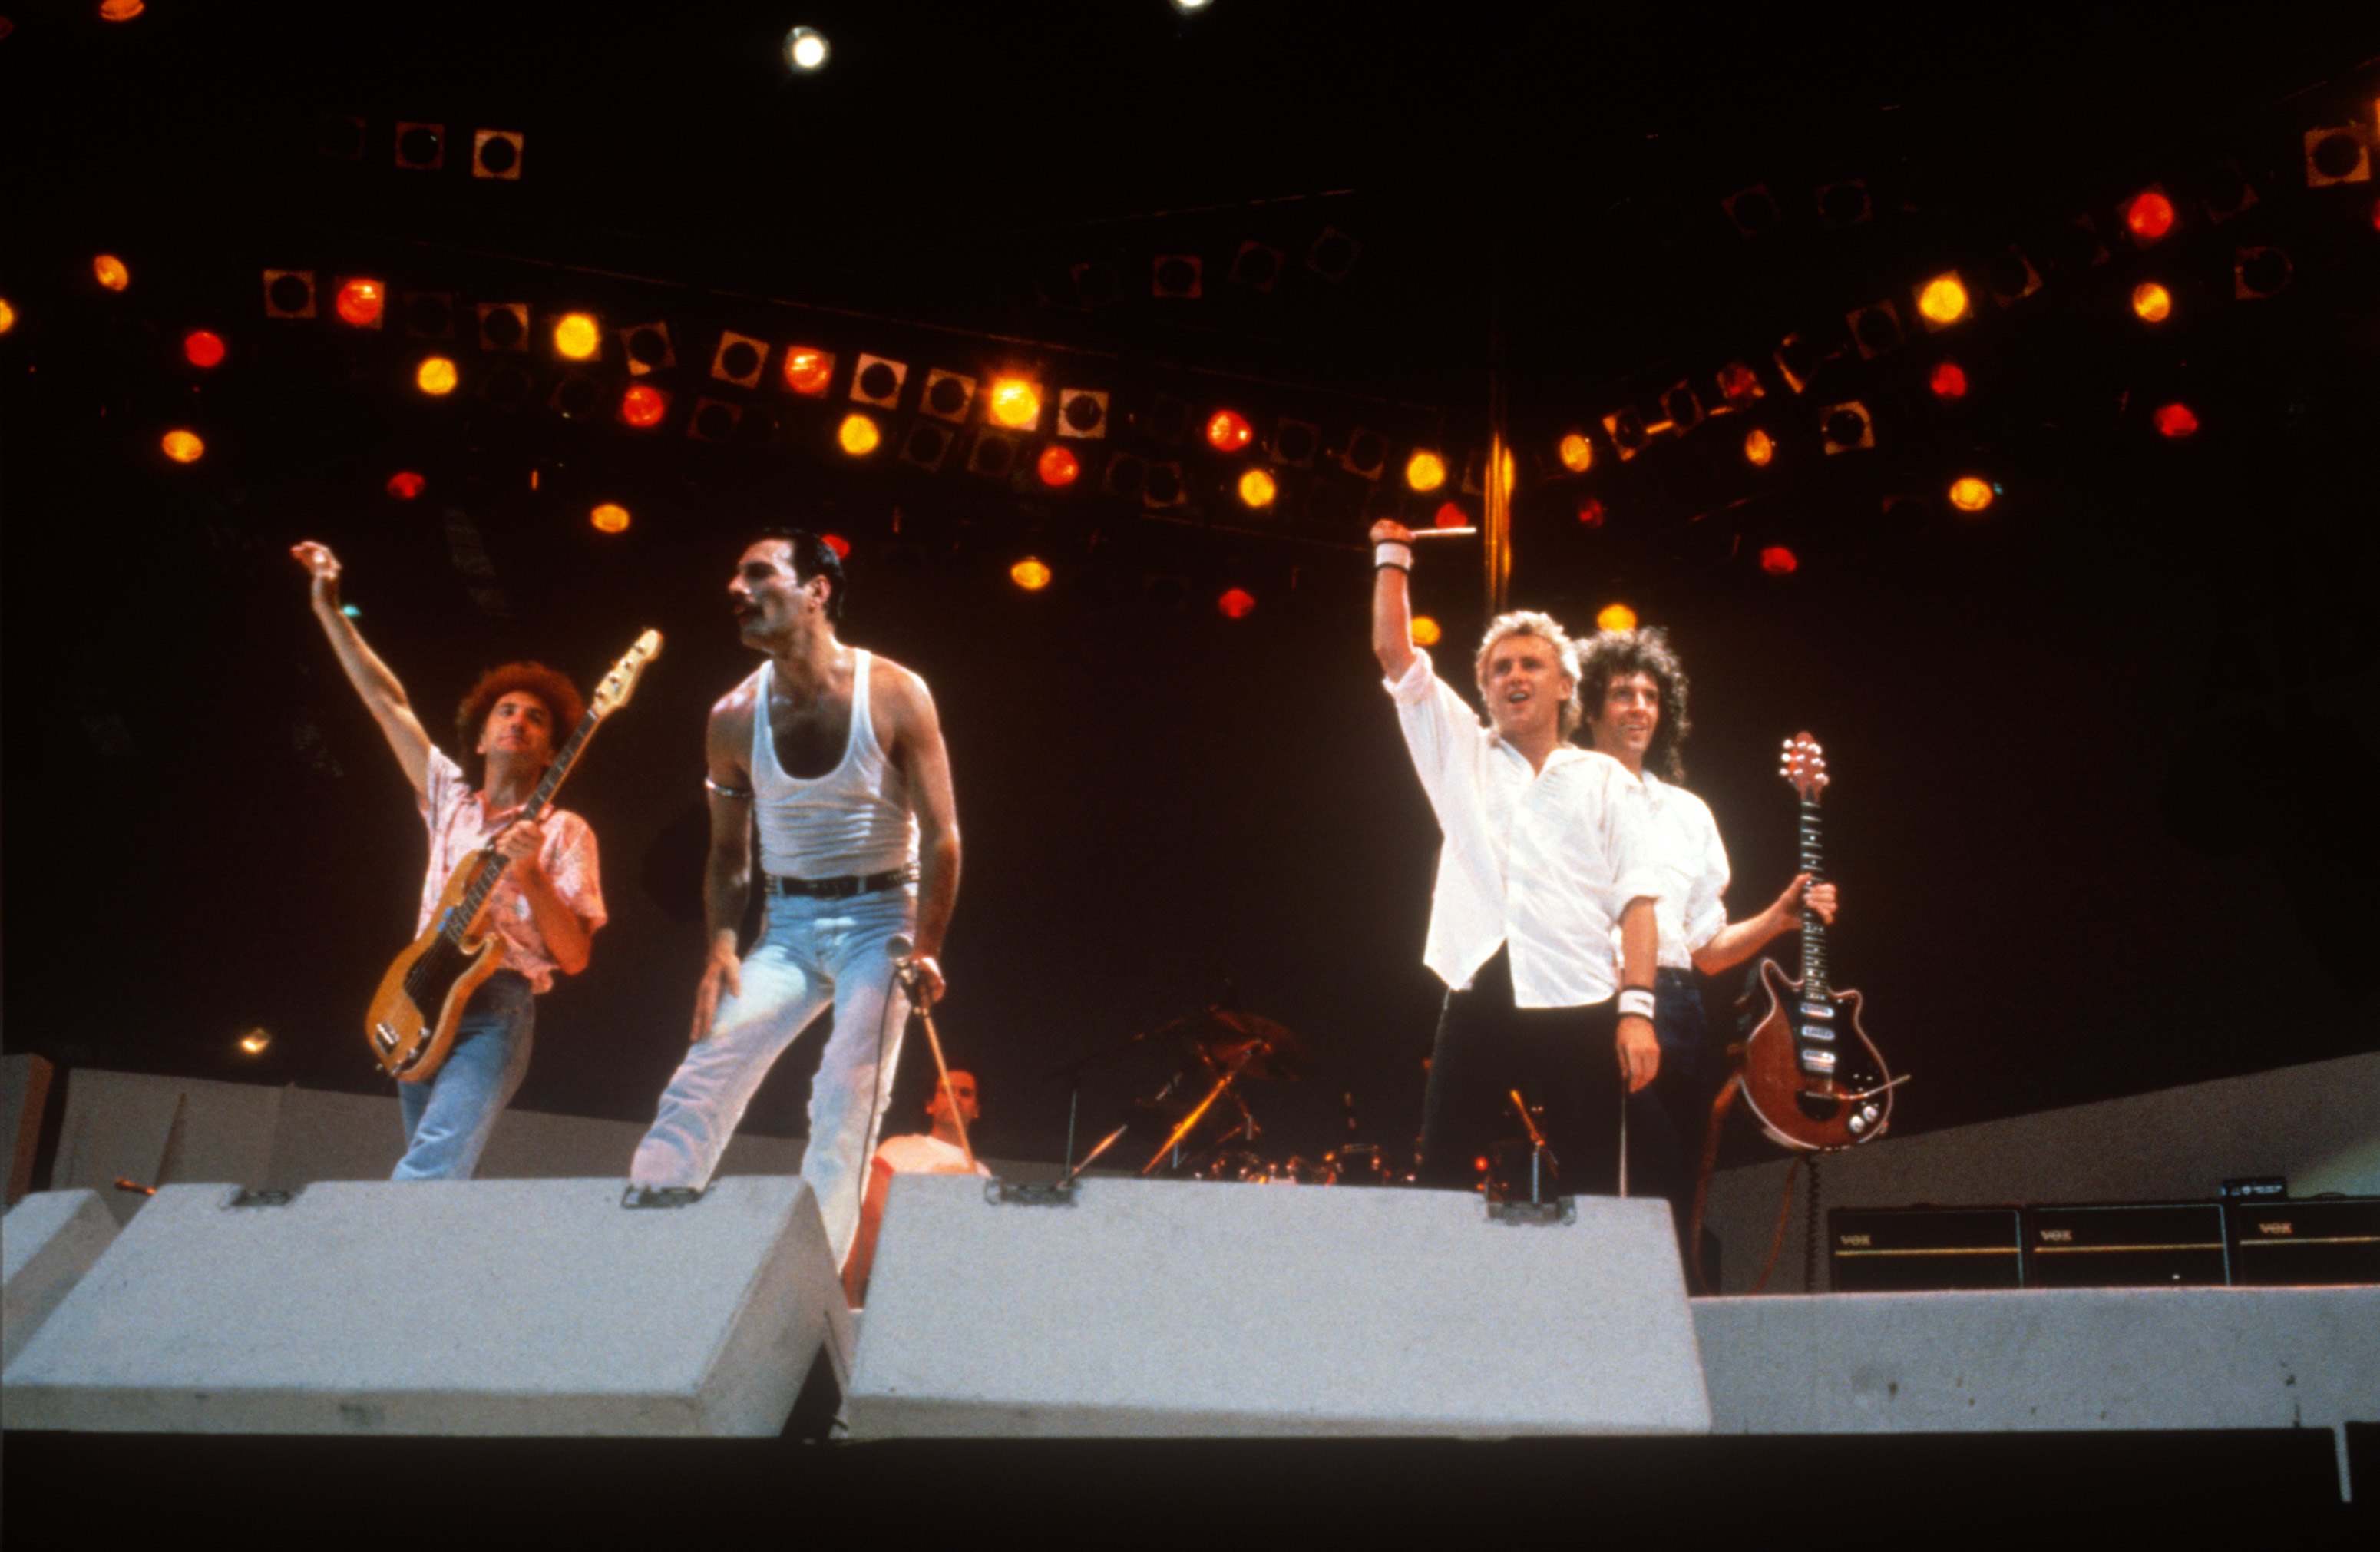 Меркьюри стадион. Концерт Live Aid 1985 Queen. Фредди Меркьюри на концерте Live Aid 1985. Группа Квин концерт 1985. Выступление куин на Уэмбли 1985.